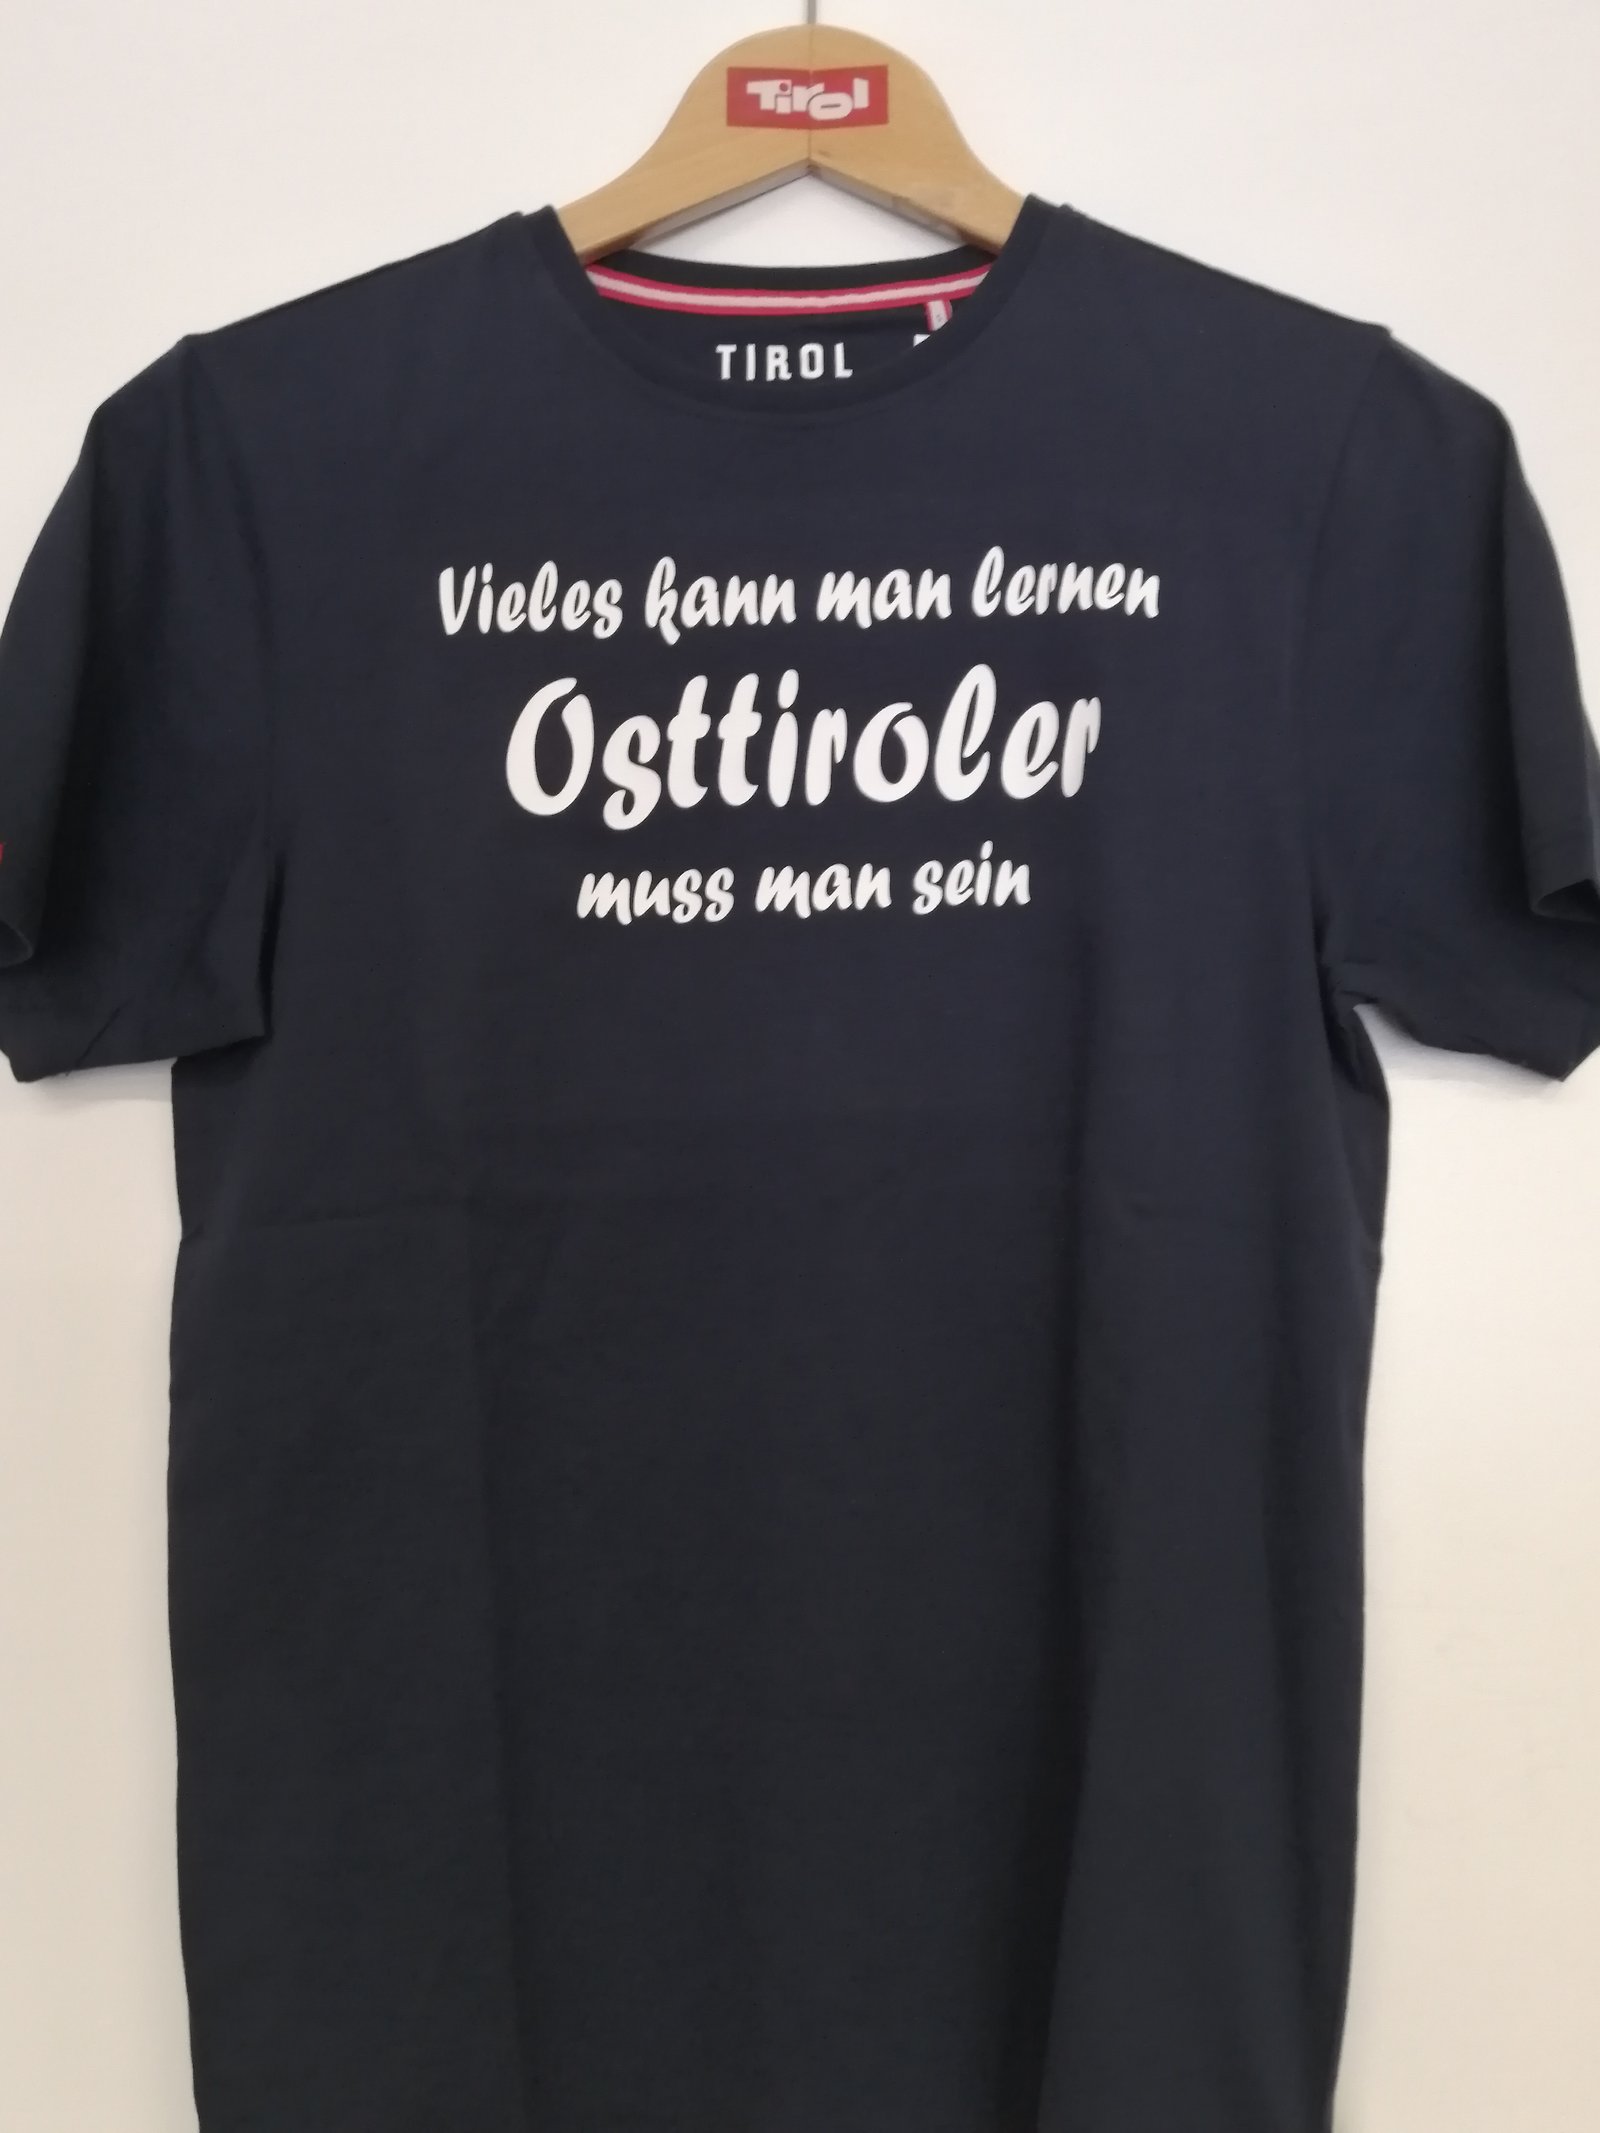 Herren T-Shirt "Osttiroler muss man sein"